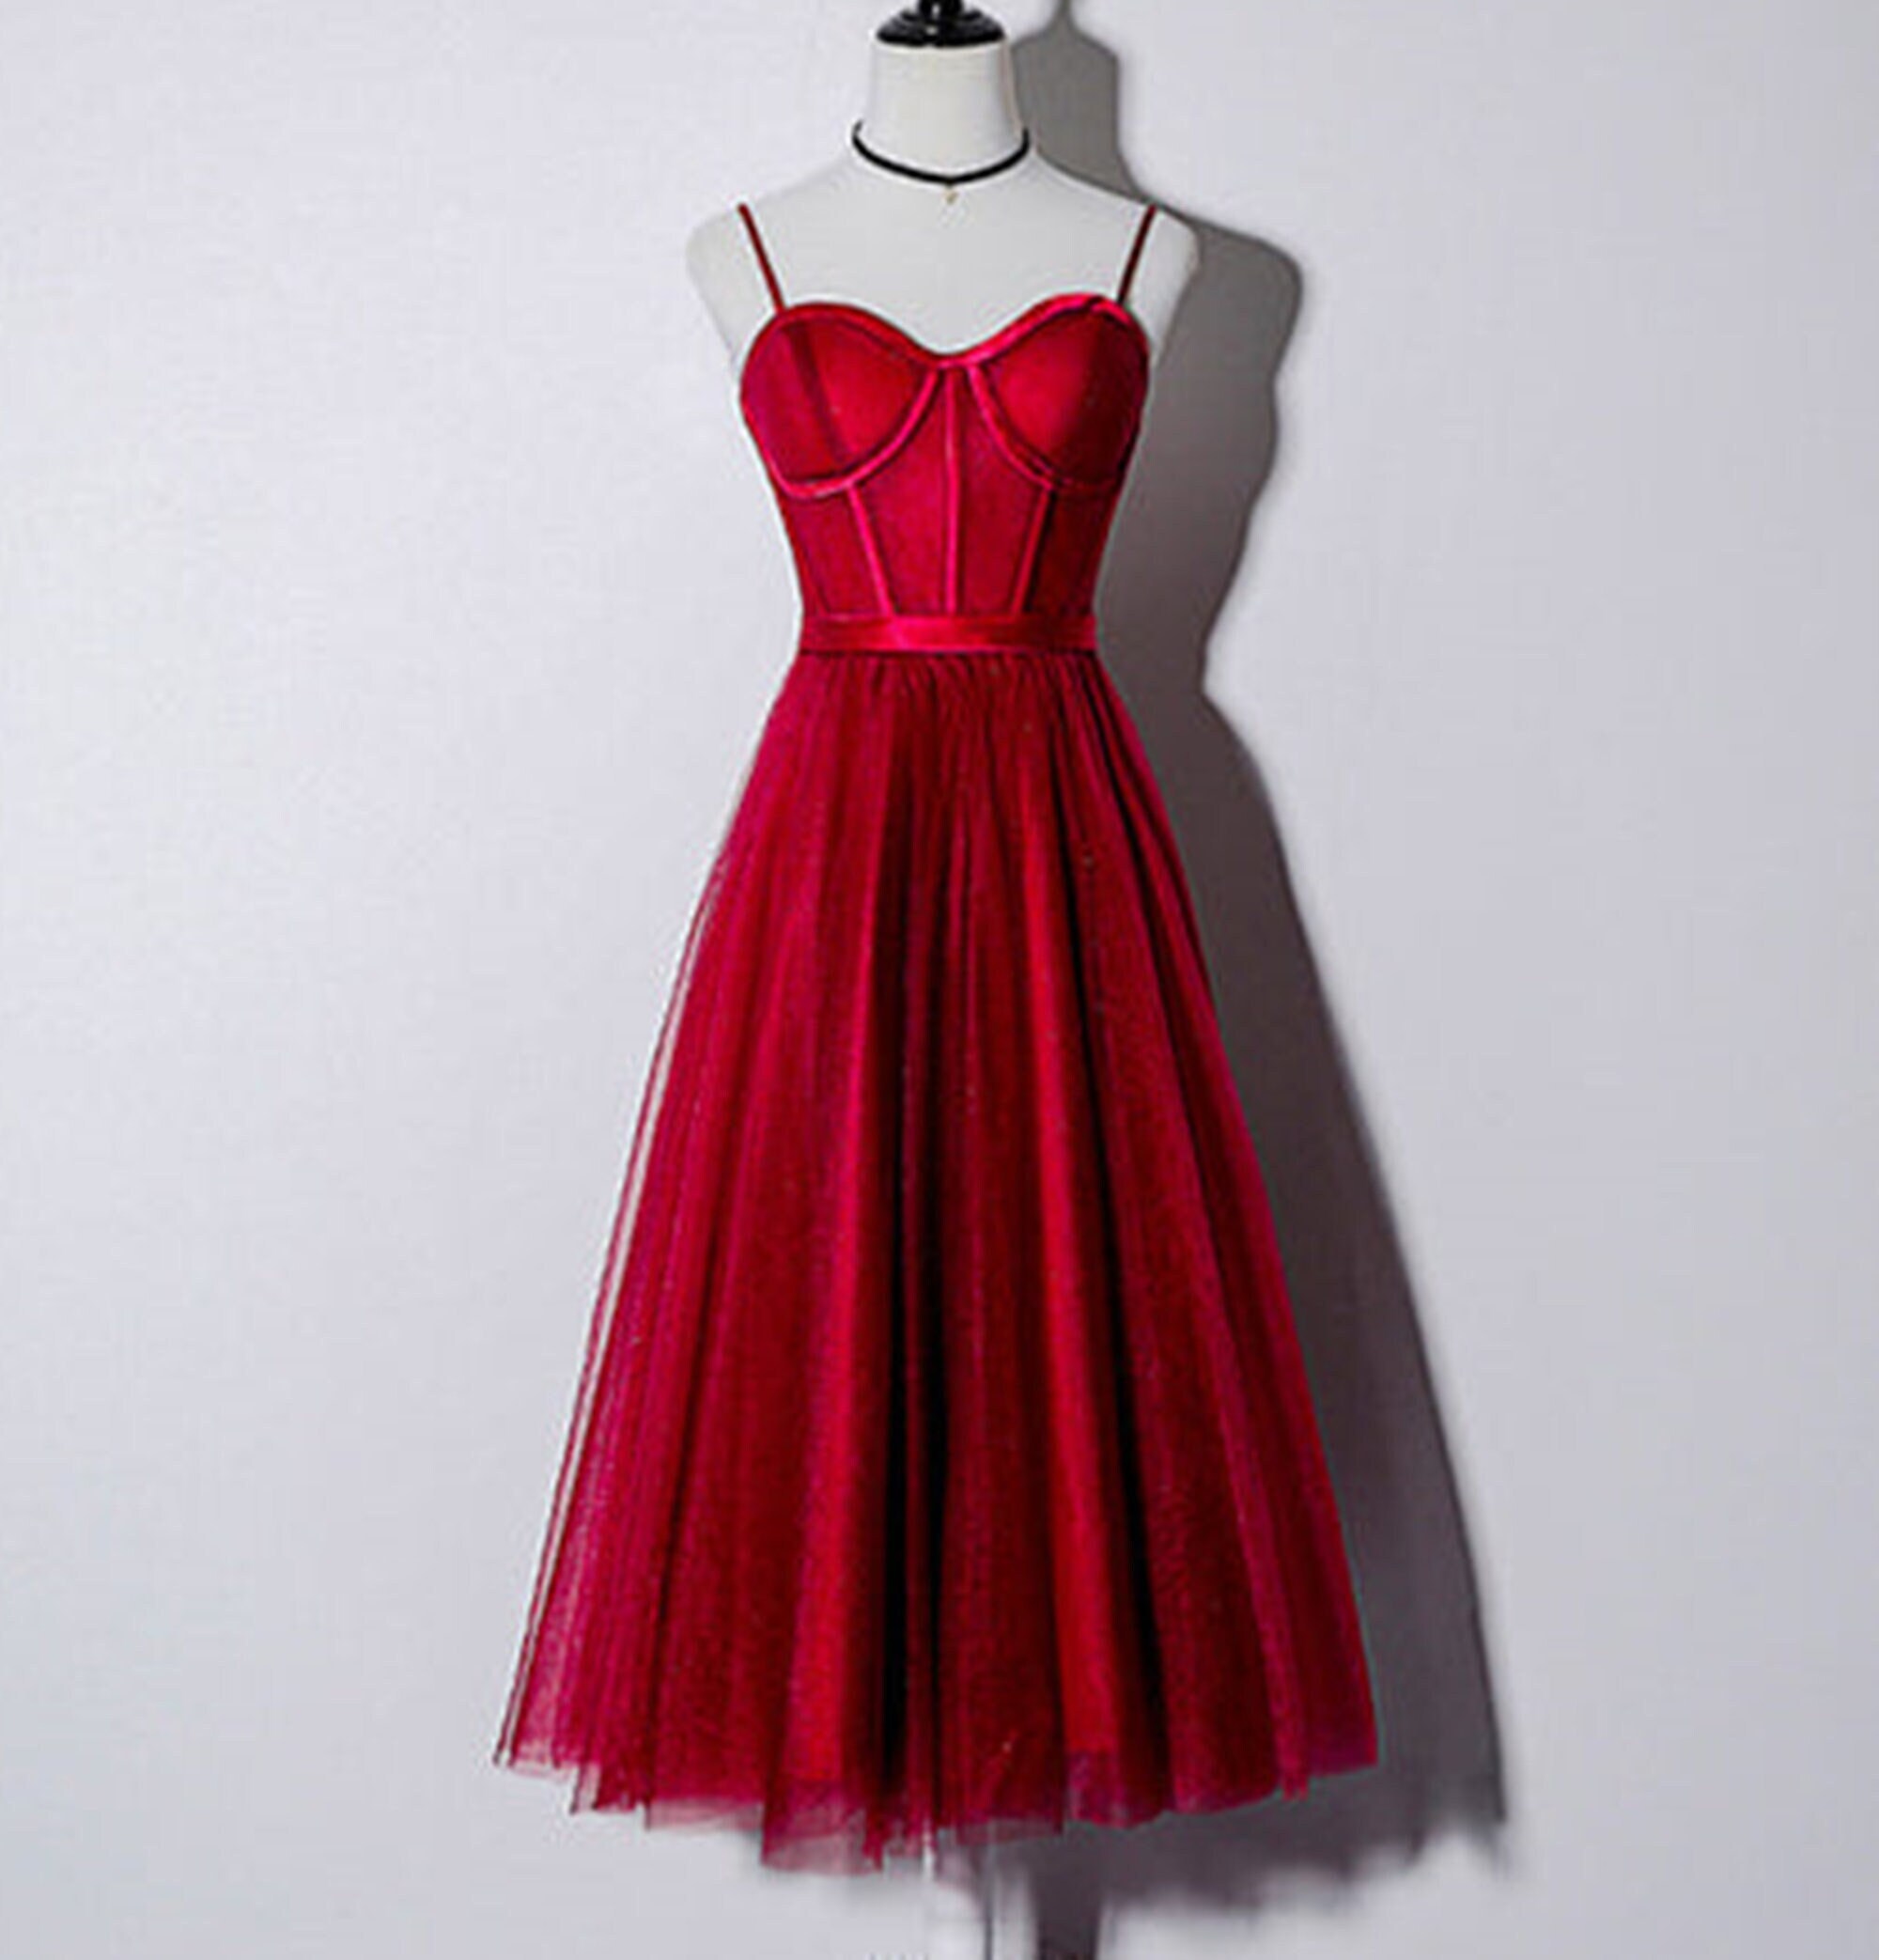 Plus Size Dress, Cocktail Dress, Womens Dress, Red Dress, Burgundy Dress,  Rust, Women Dress, Knee Length, Short Sleeve Dress, 1950's Dress 